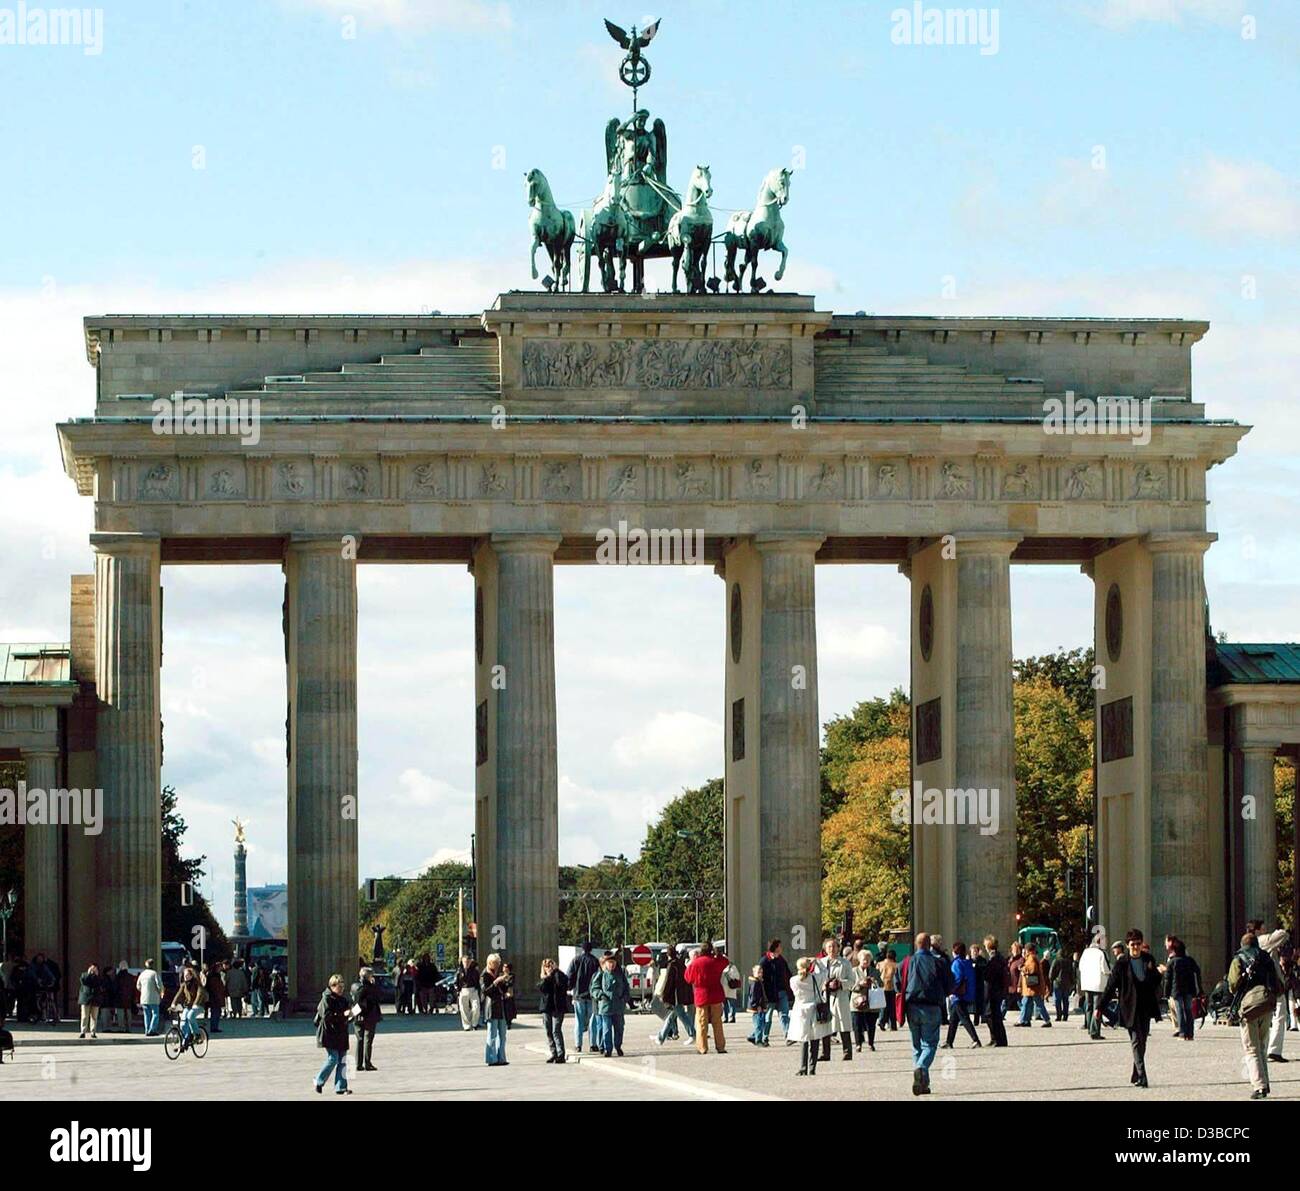 (Afp) - La Porte de Brandebourg brille après rénovations, photographié à Berlin, 7 octobre 2002. L'arc monumental, qui s'élevait dans le no man's land entre l'Est et l'Ouest depuis 37 ans, a été enveloppé d'échafaudages depuis près de deux ans. La spectaculaire dévoilement de la porte a été récemment rénové, le Banque D'Images